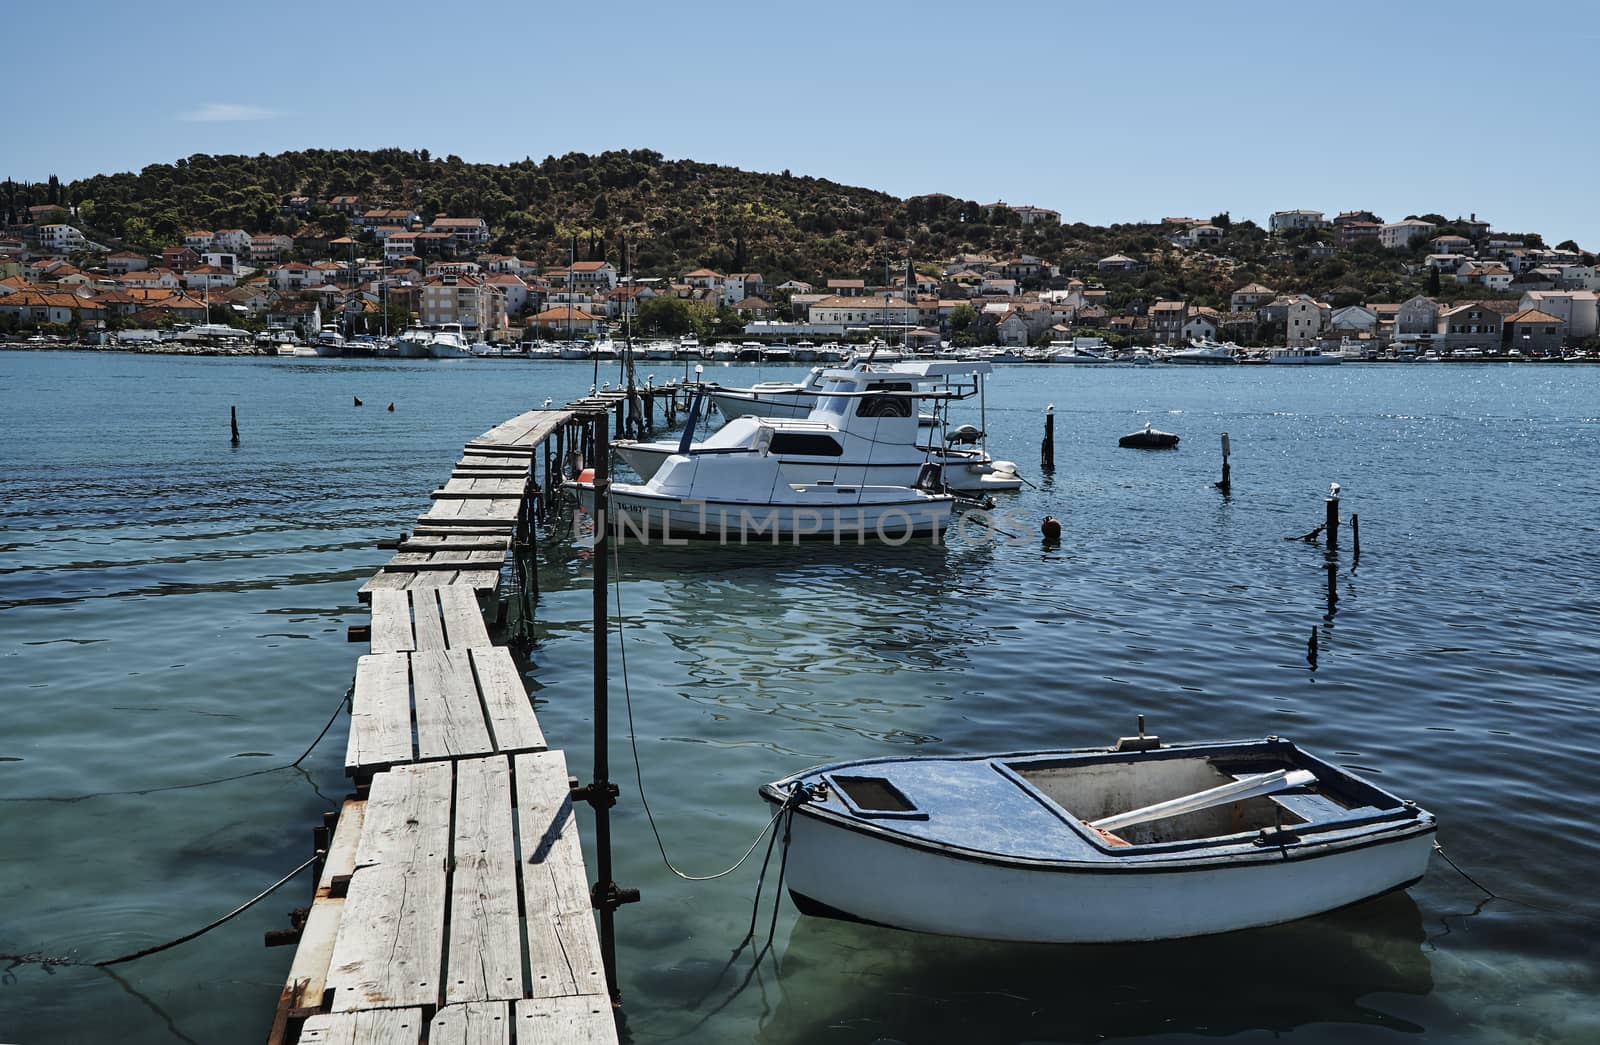 Motorboats on a wooden platform in Trogir, Croatia